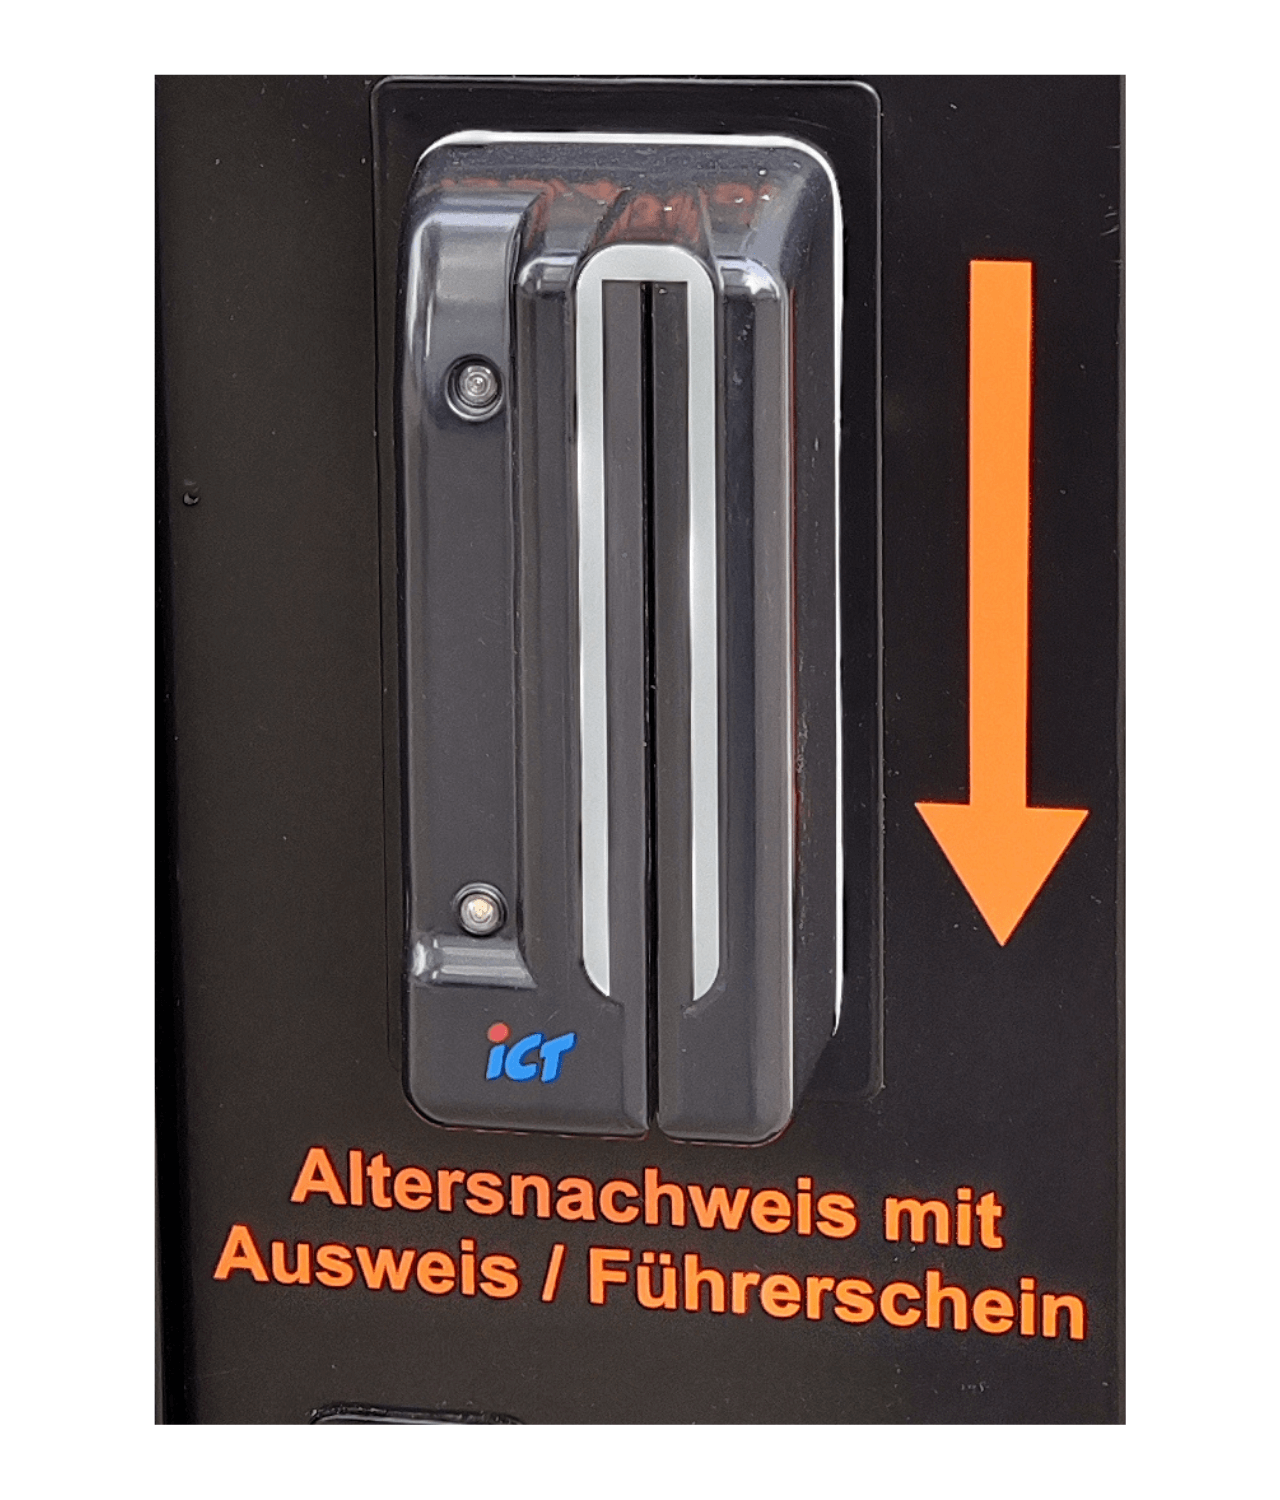 ICT DCM5 Altersnachweis - Hohenloher Verkaufsautomaten Shop